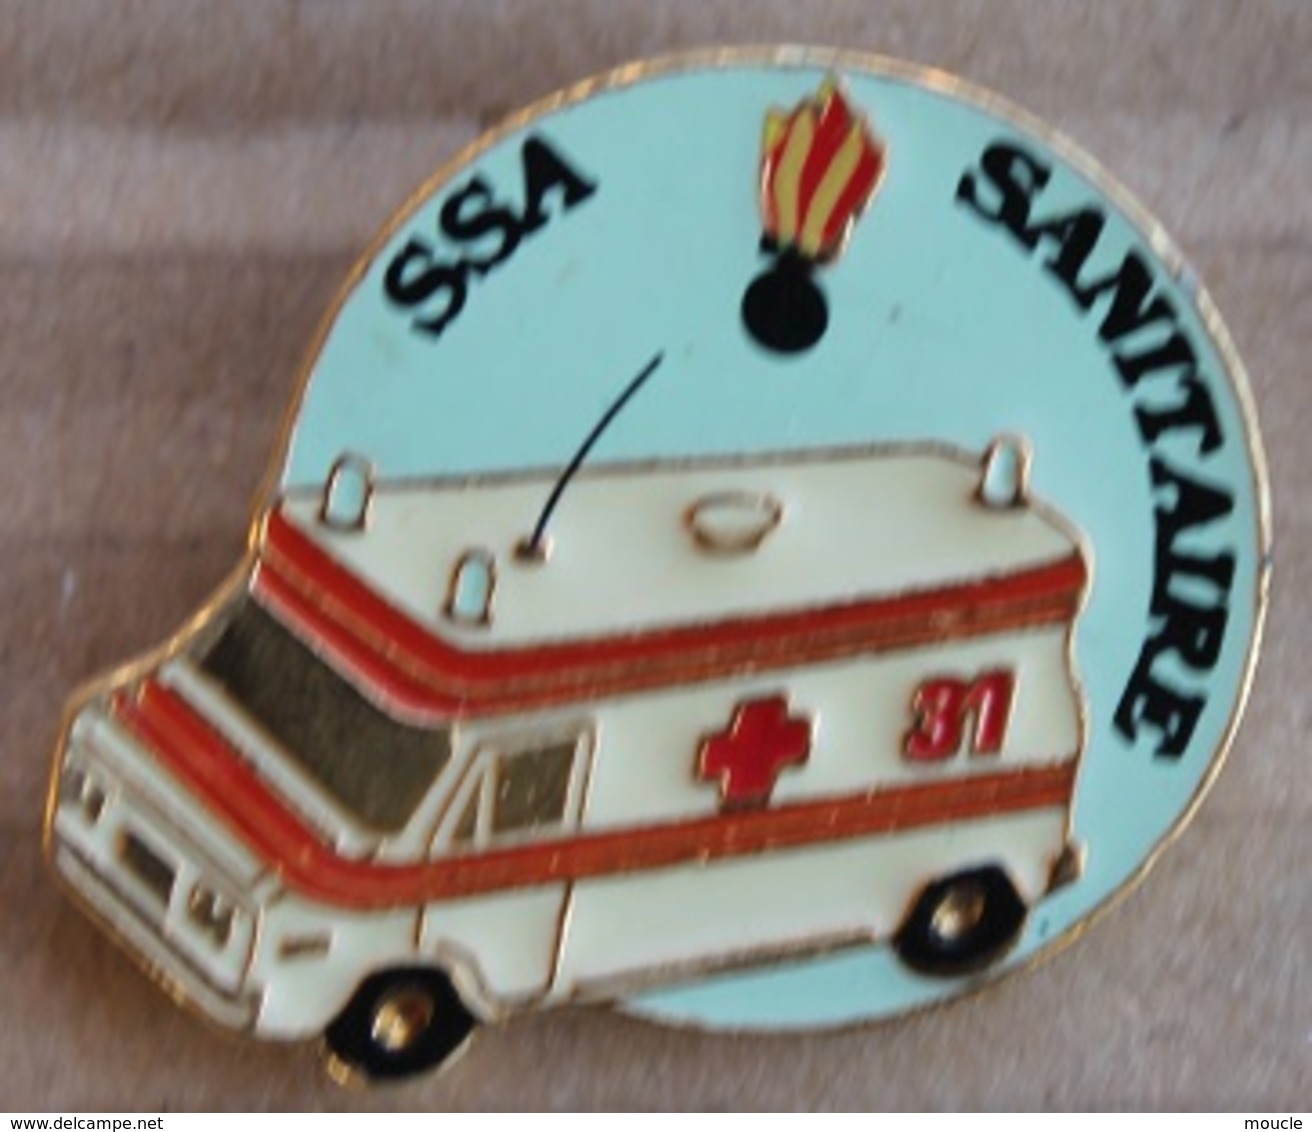 SERVICE SECURITE DE L'AEROPORT - S.S.A. - GENEVE - SAPEURS POMPIERS - SANITAIRES - AMBULANCE  -   (21) - Feuerwehr